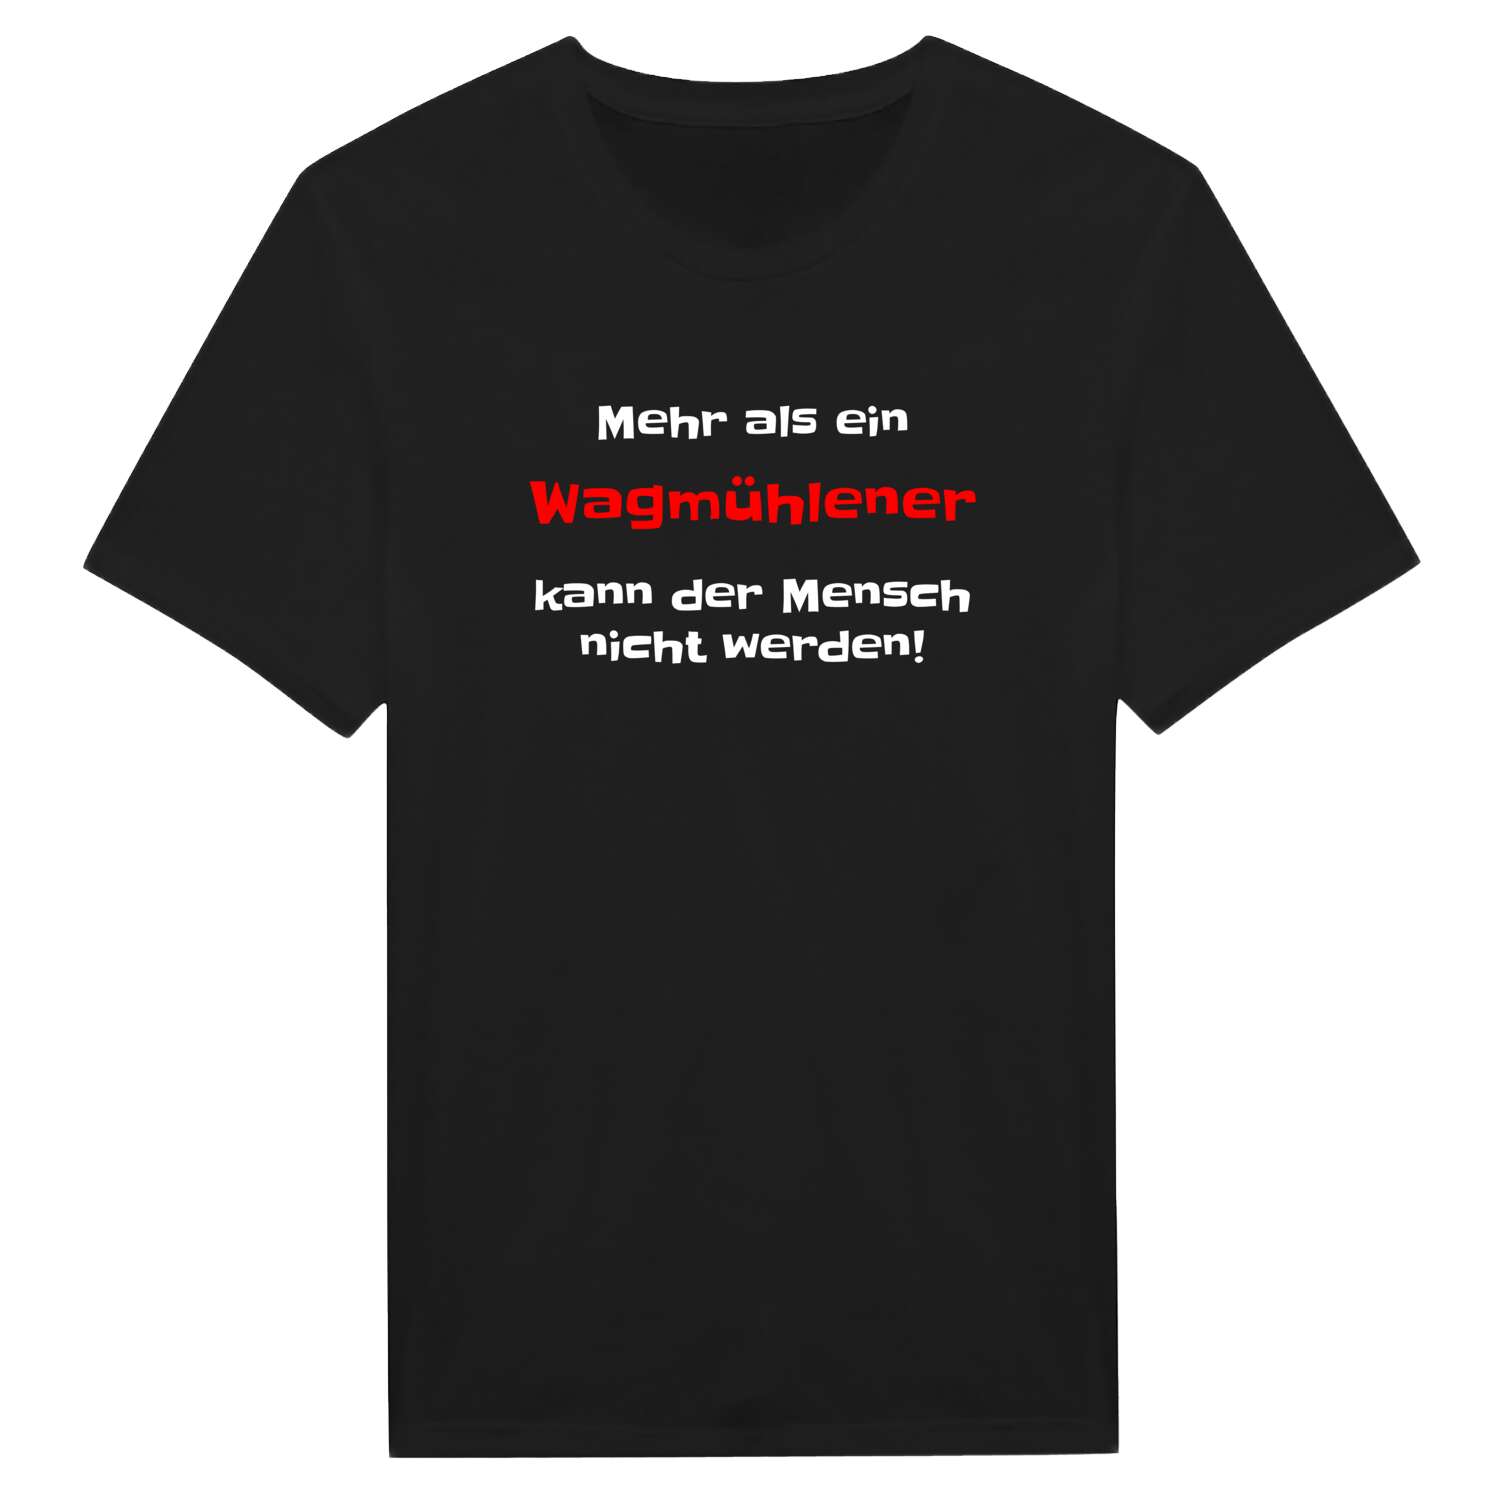 Wagmühle T-Shirt »Mehr als ein«